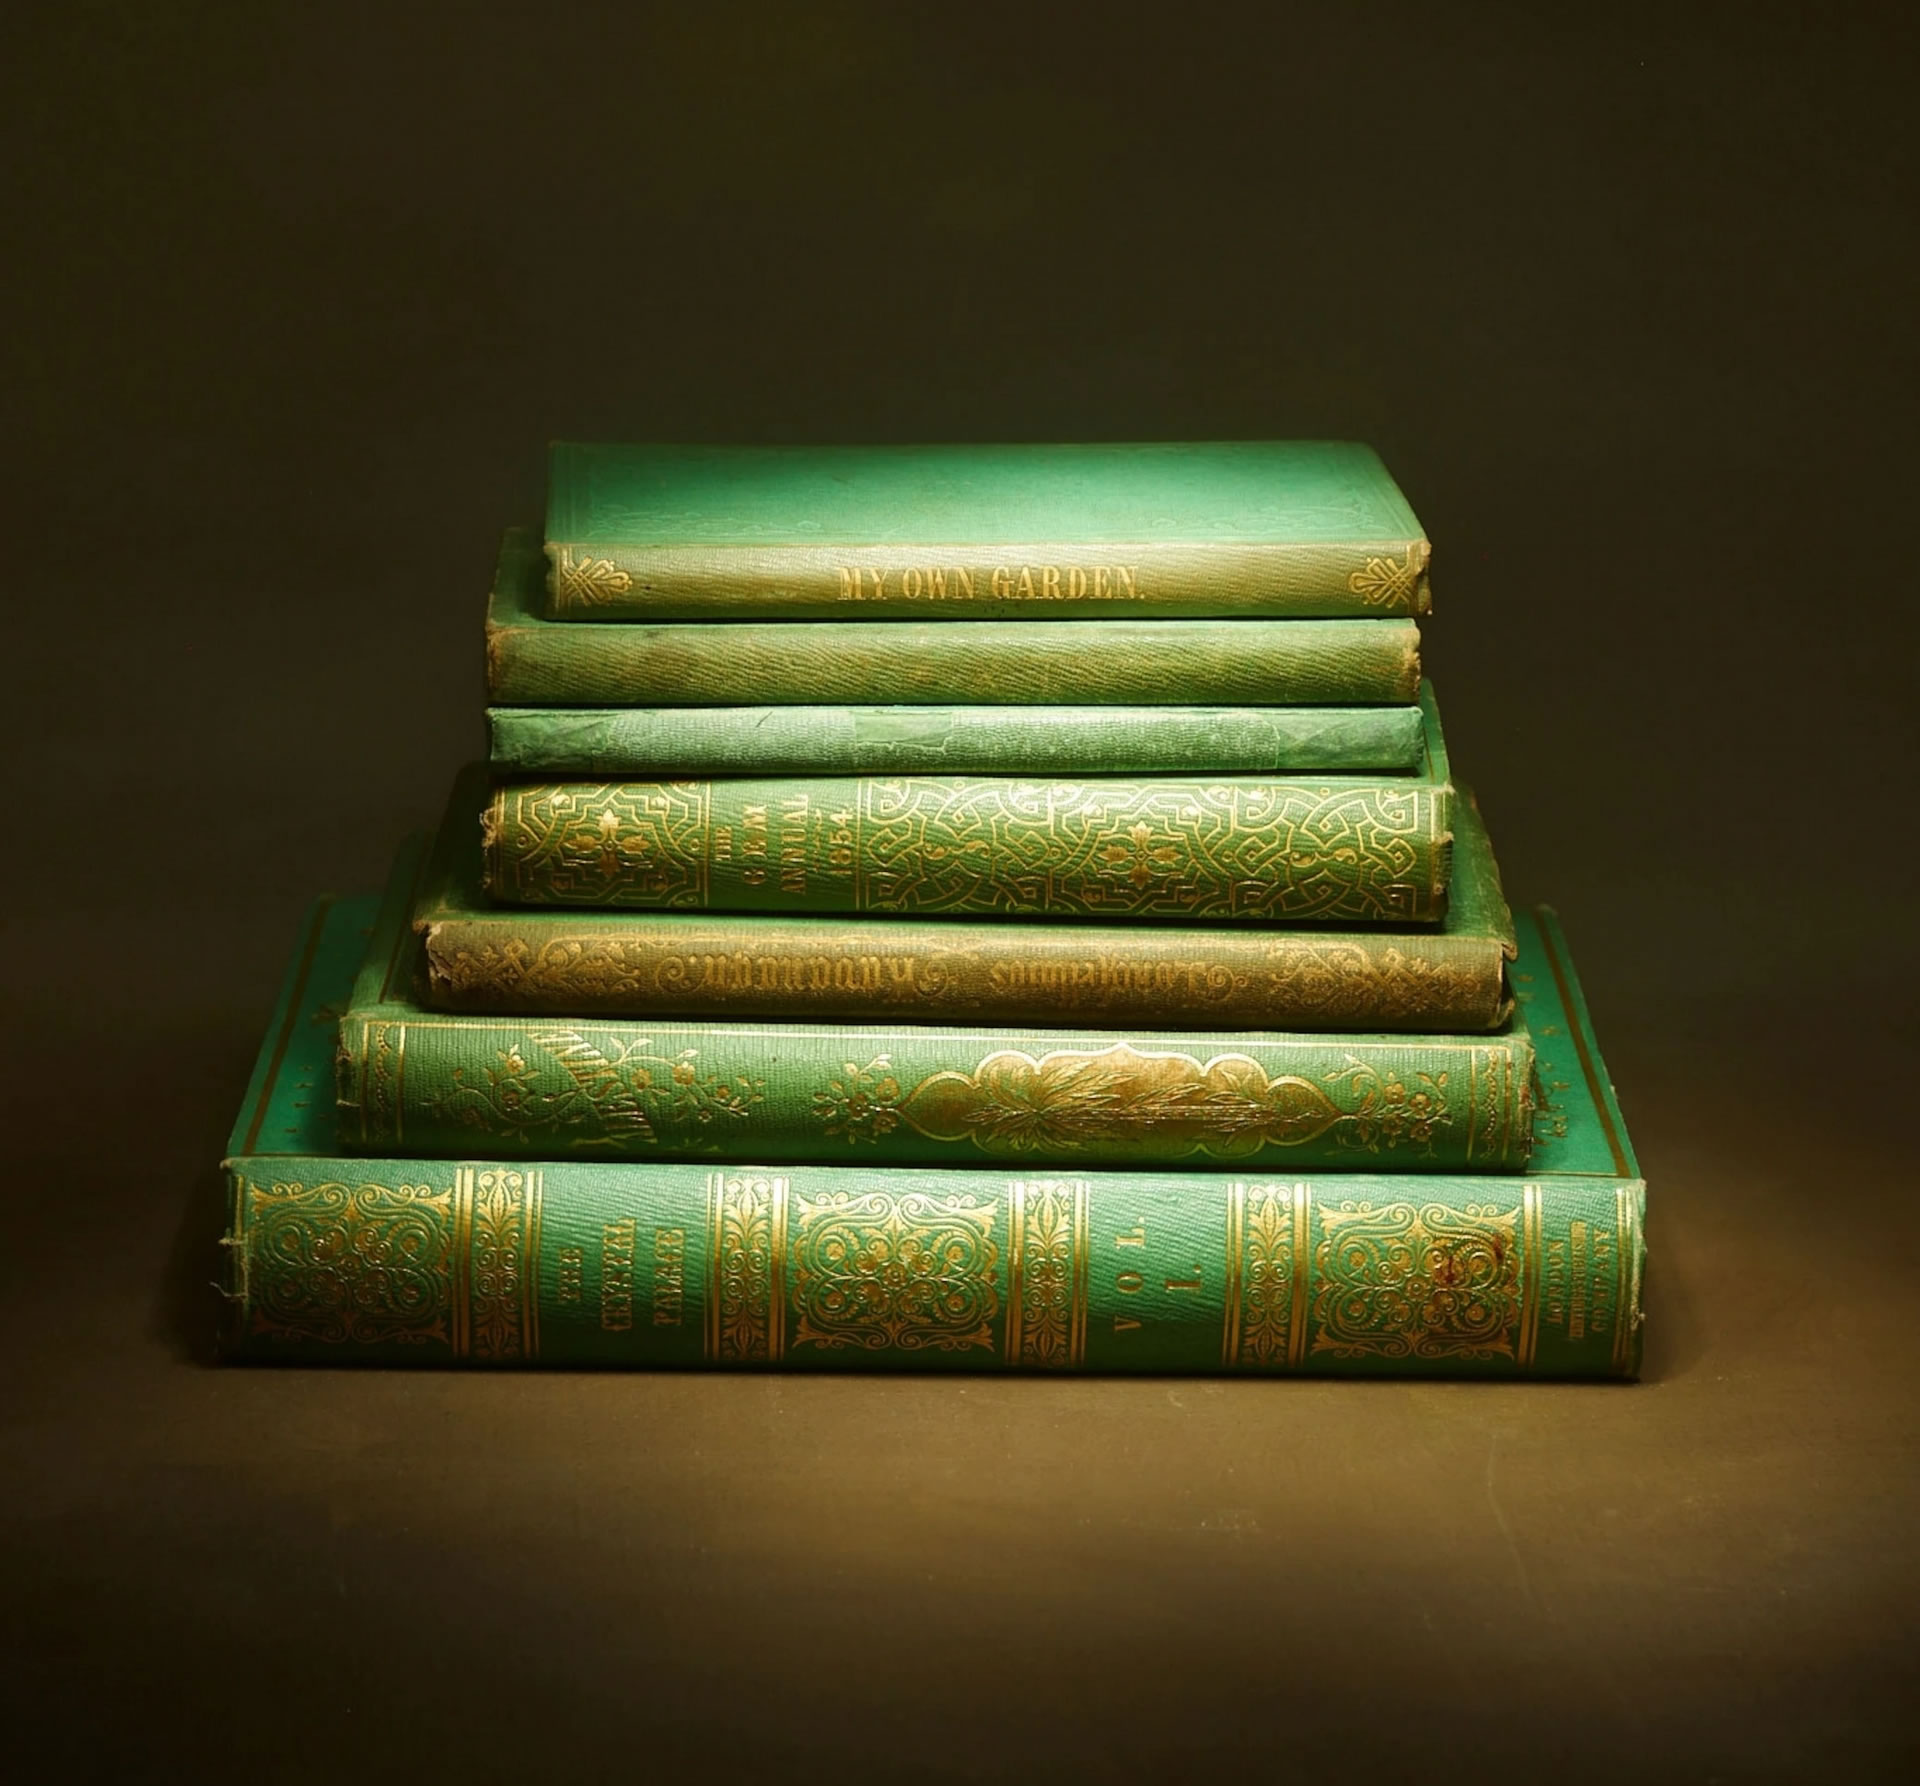 图书馆里的毒物：有毒翡翠绿颜料染成的布料装帧的绿皮书